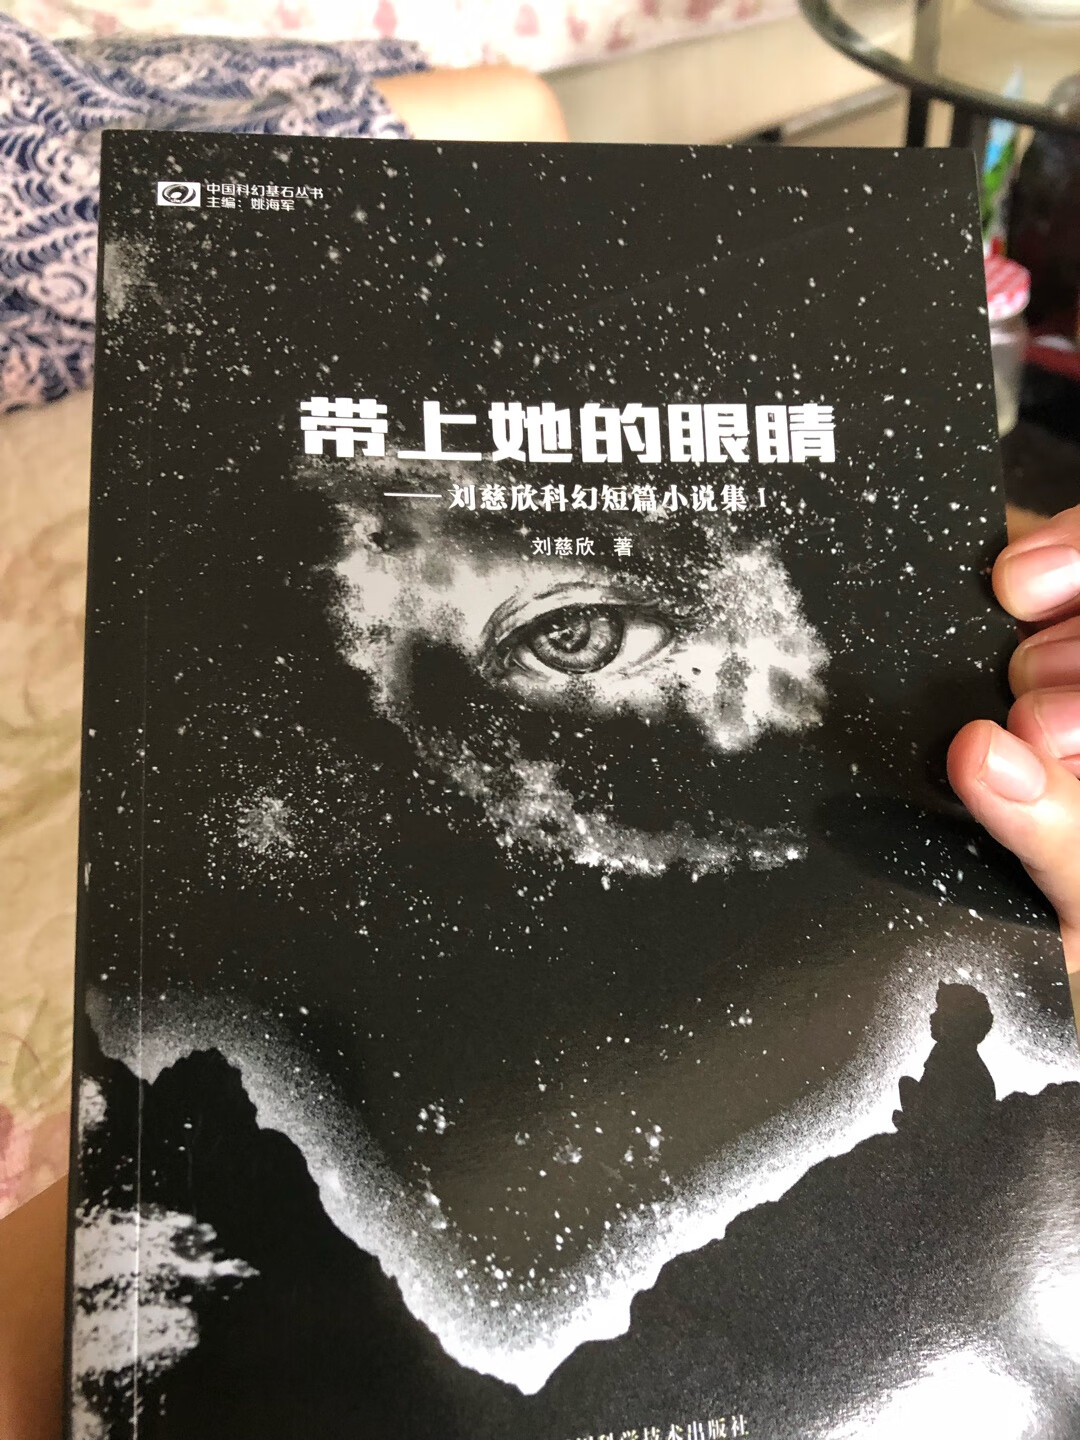 不错哦，很好的科幻小说，中国人的骄傲，我们的自豪。看来我们要努力学习啦！